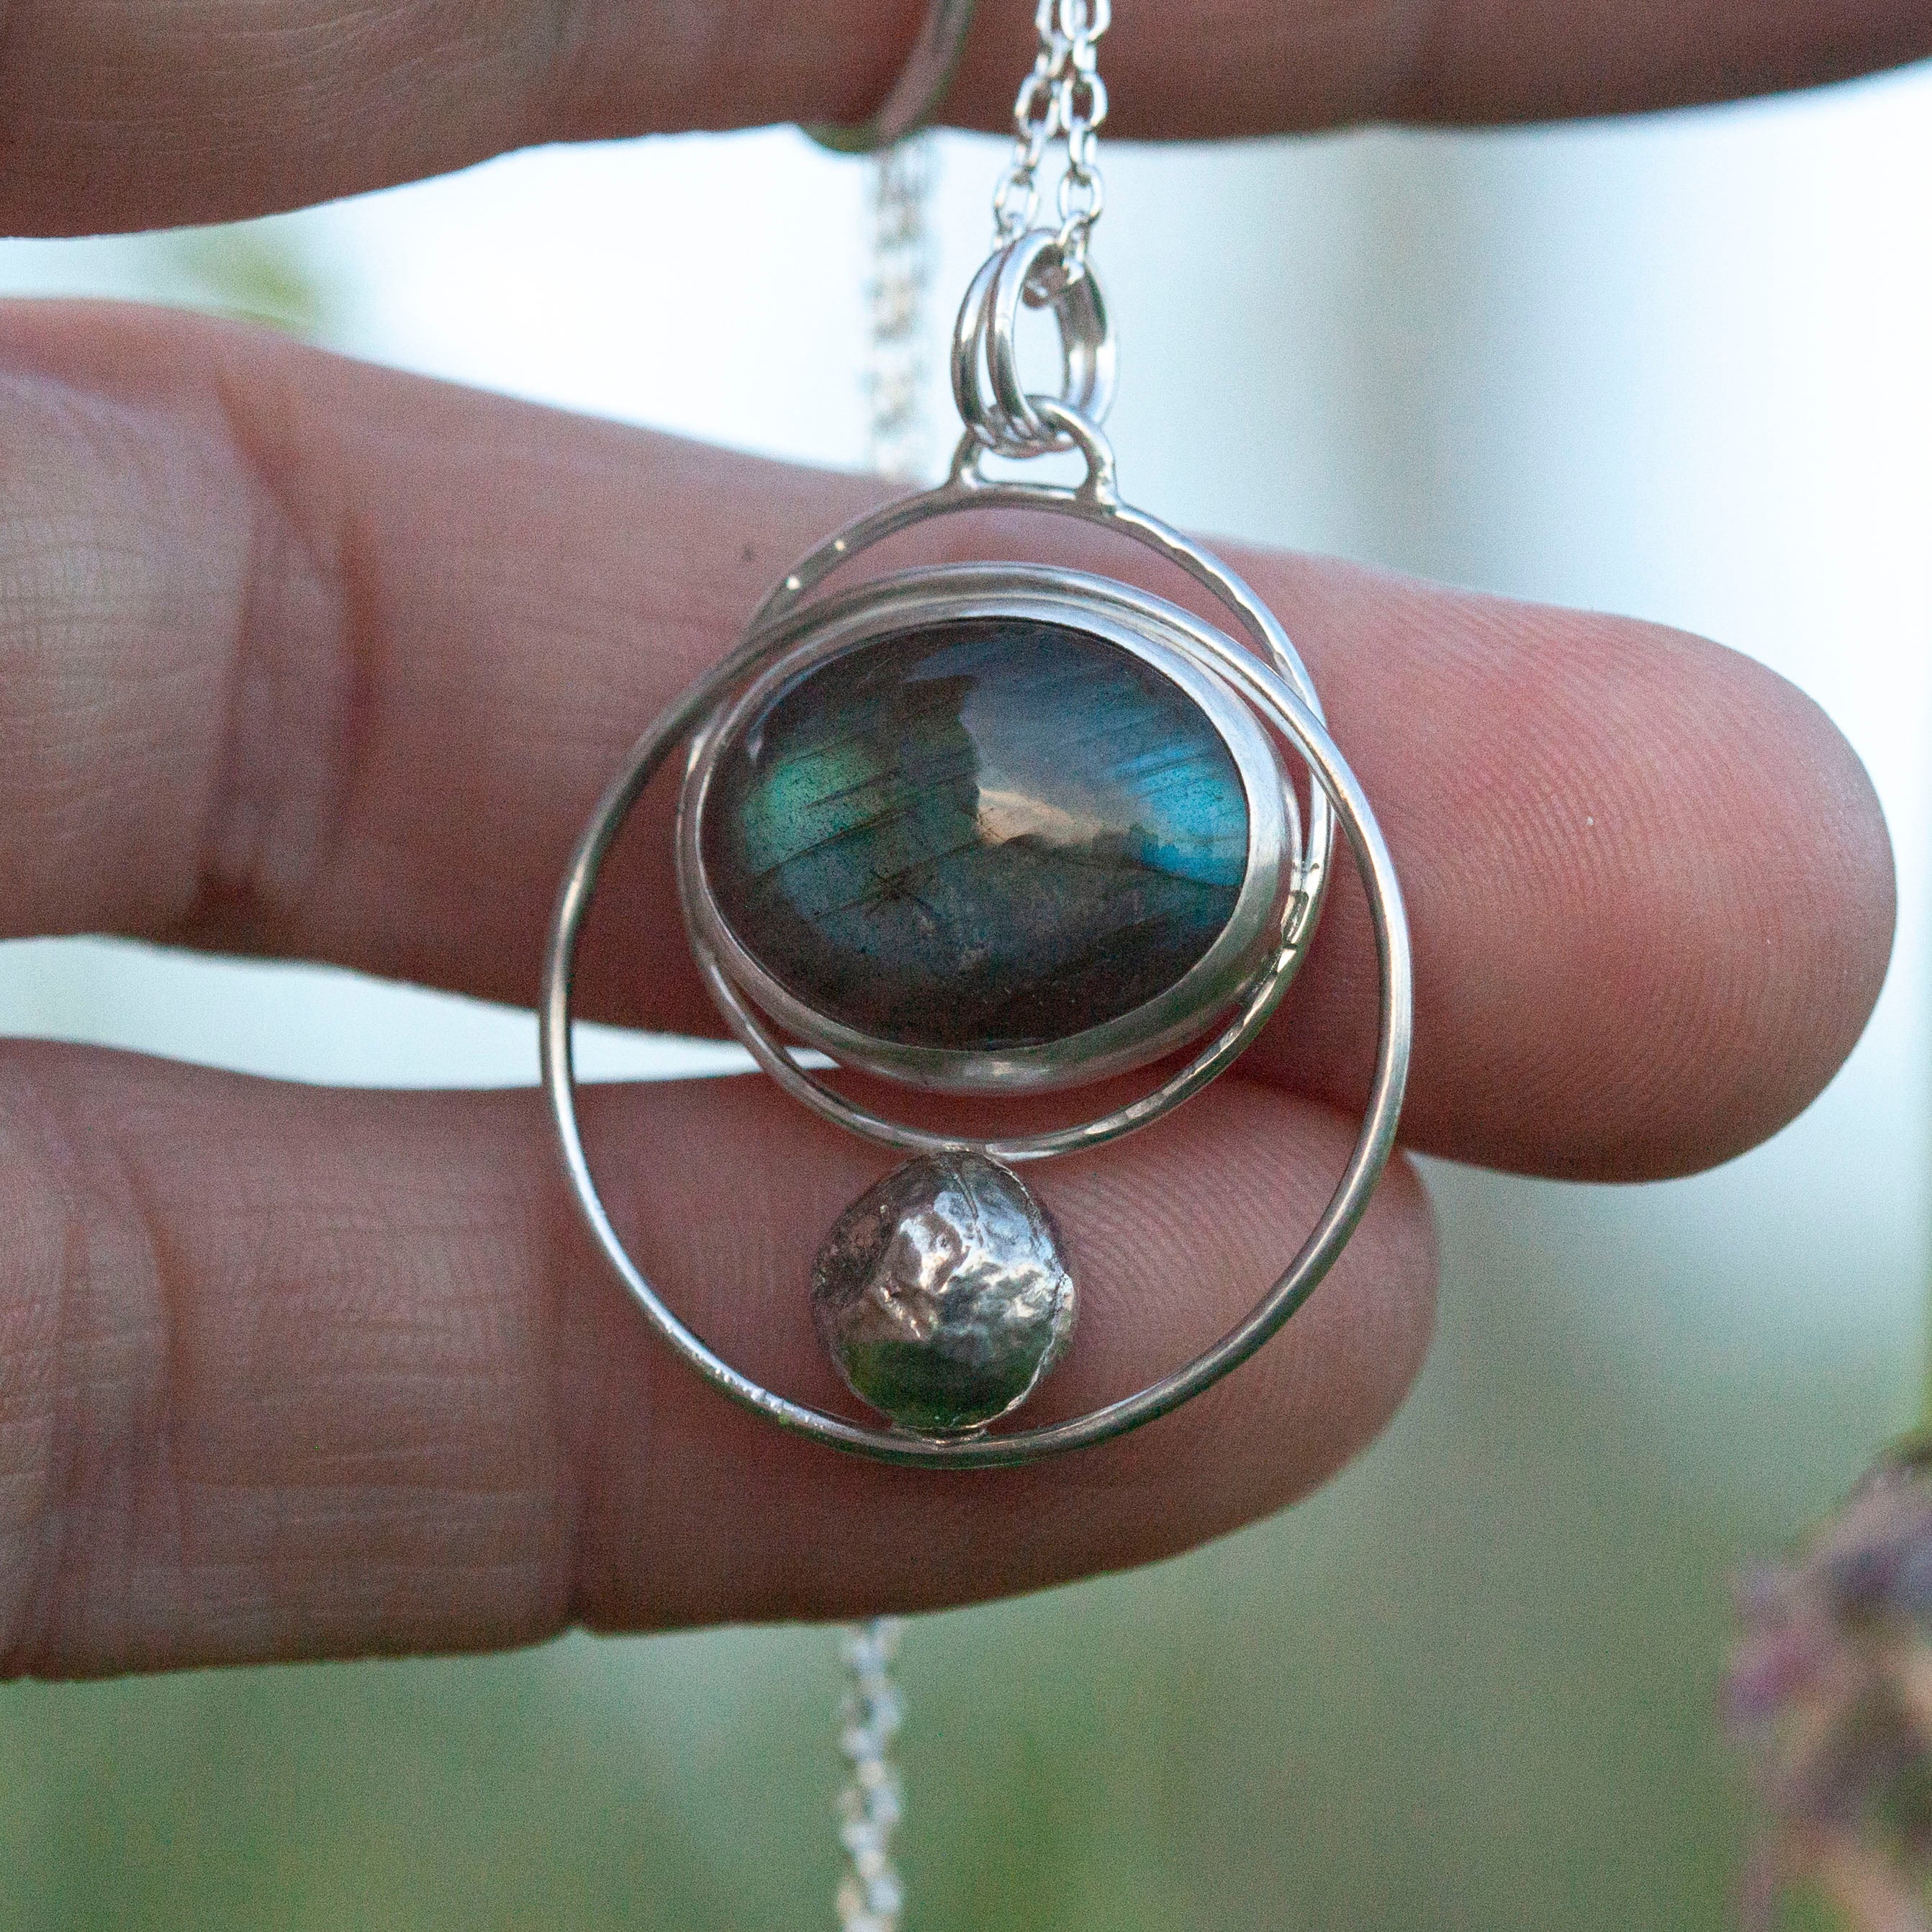 OOAK pendant with stone #9 • Labradorite  (ready to ship)